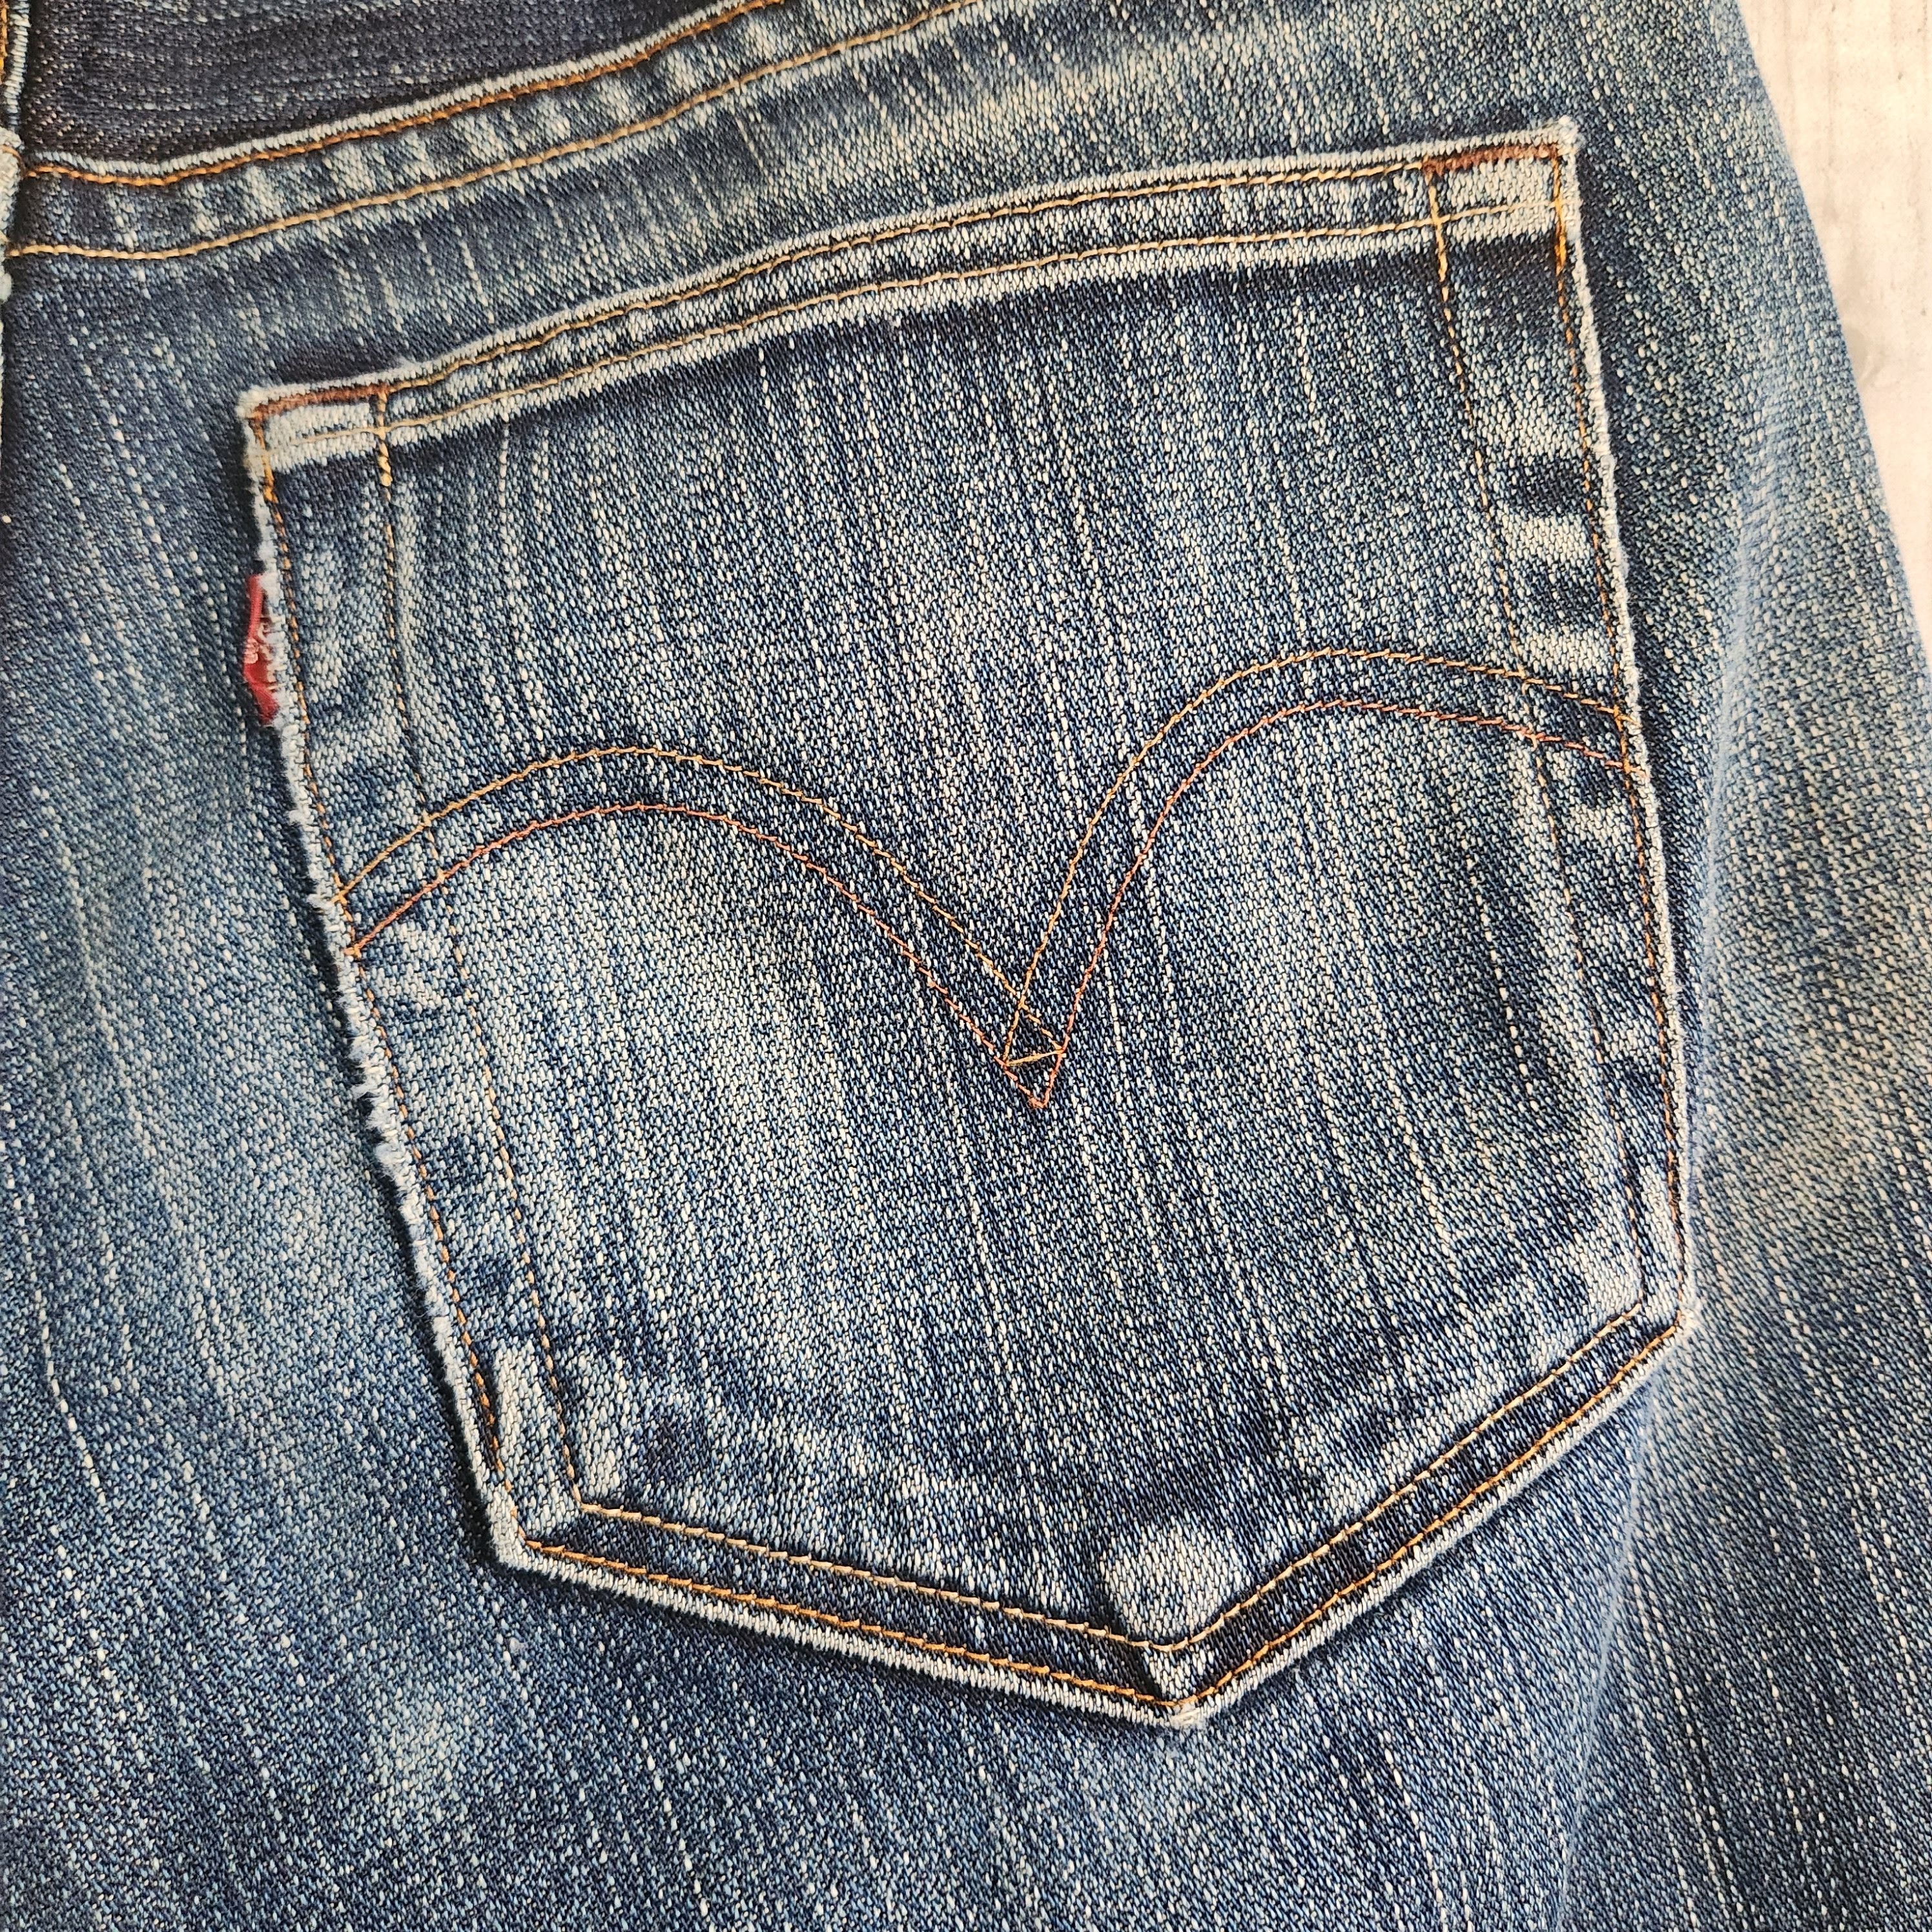 Levis 505 Premium Distressed Denim Jeans - 10